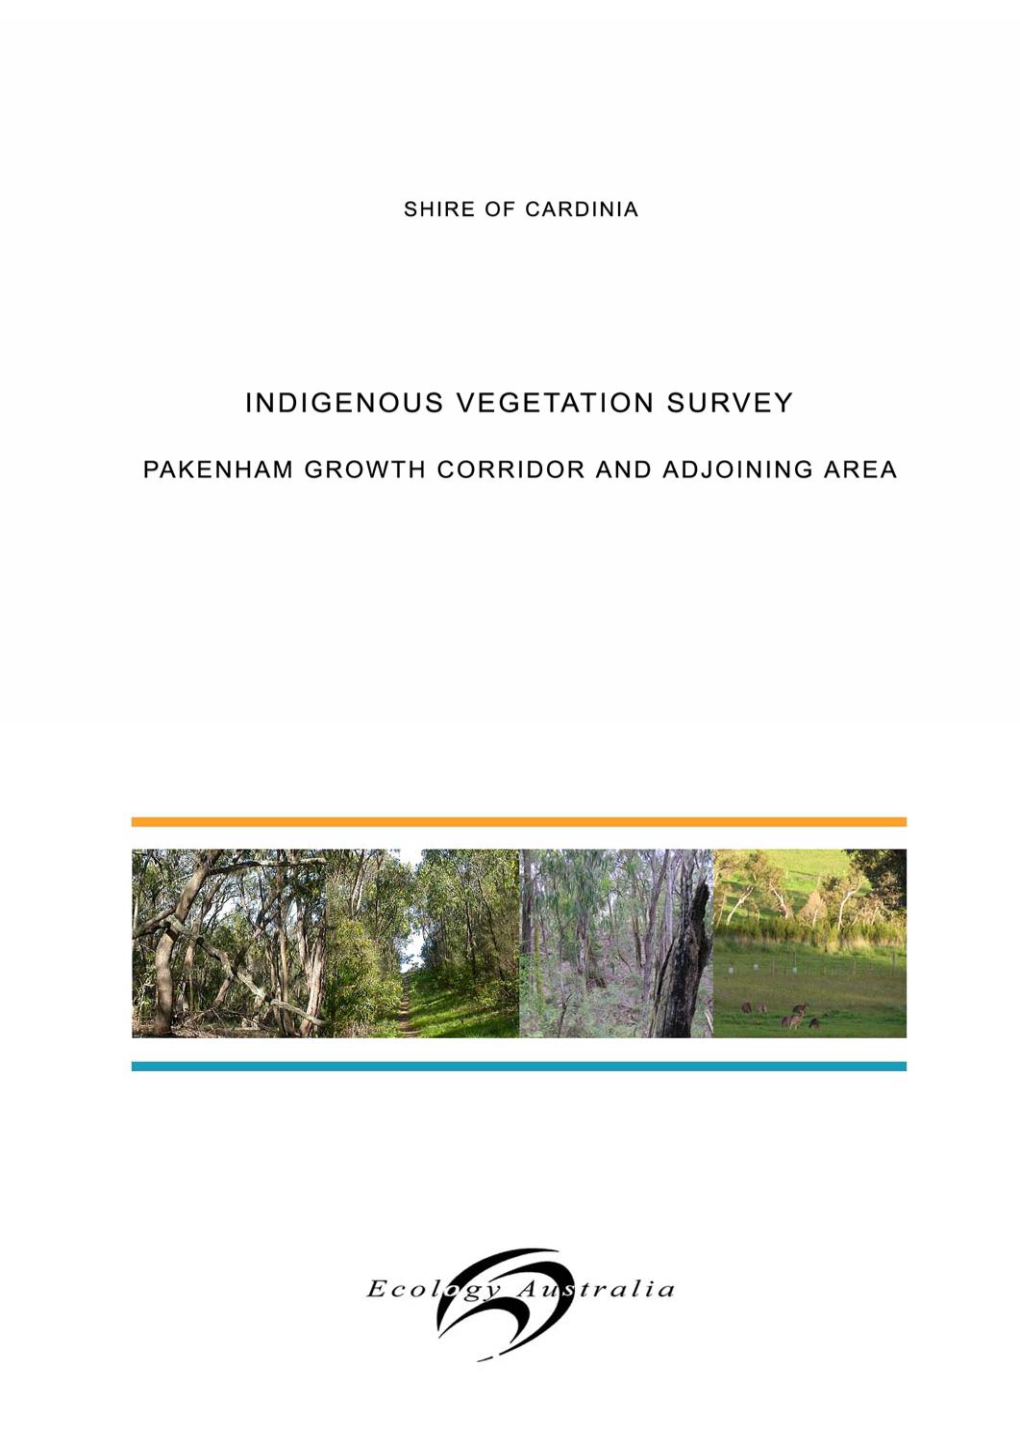 Shire of Cardinia Indigenous Vegetation Survey